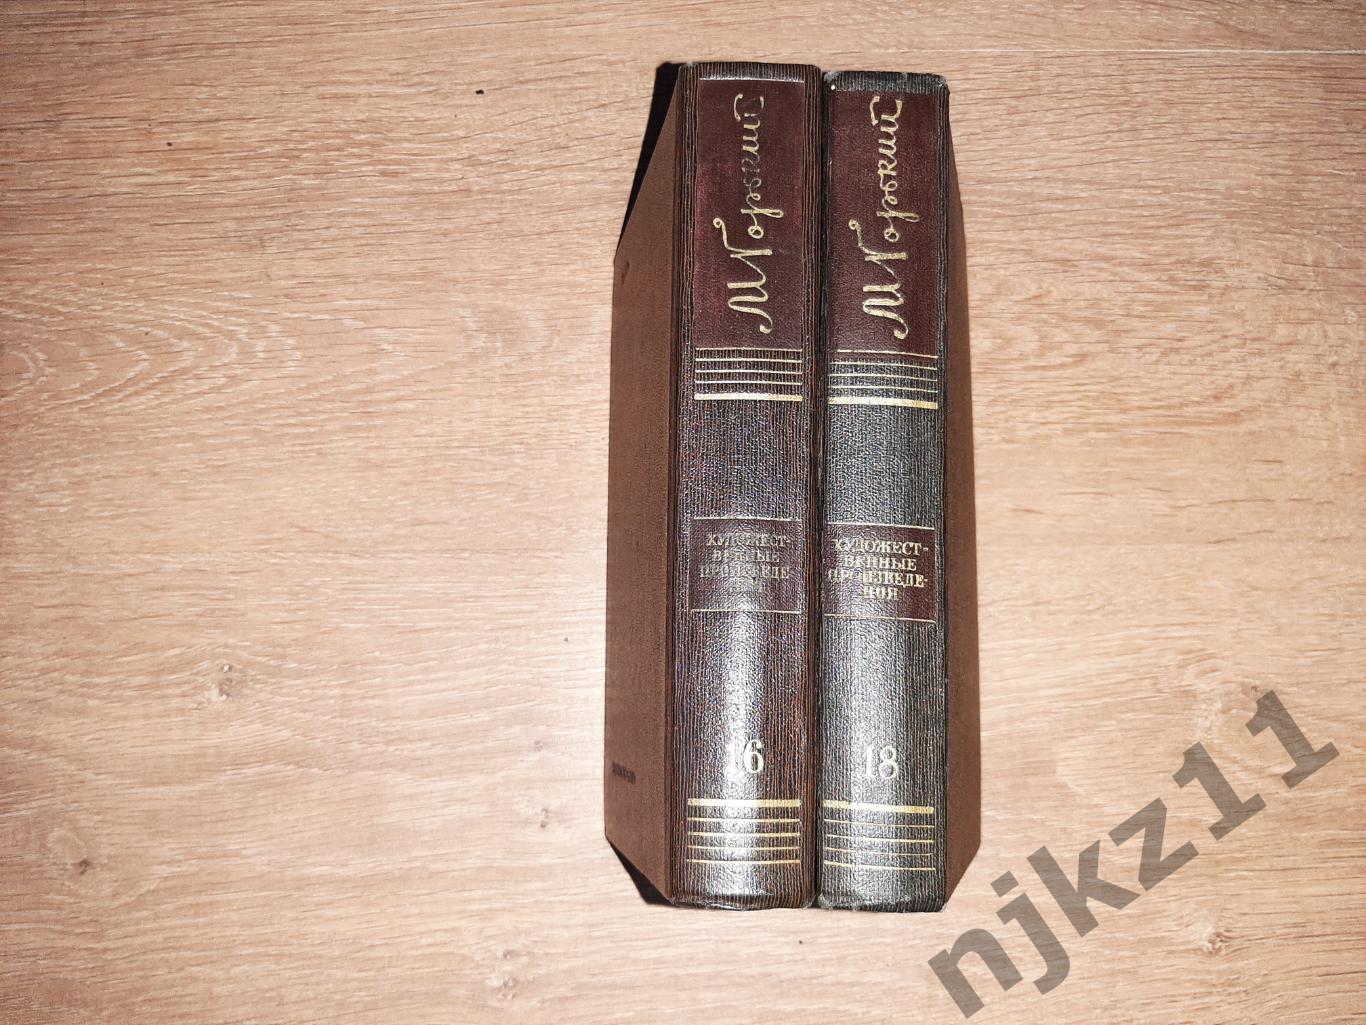 Горький, М. Полное собрание сочинений В 25 томах тома 16,18